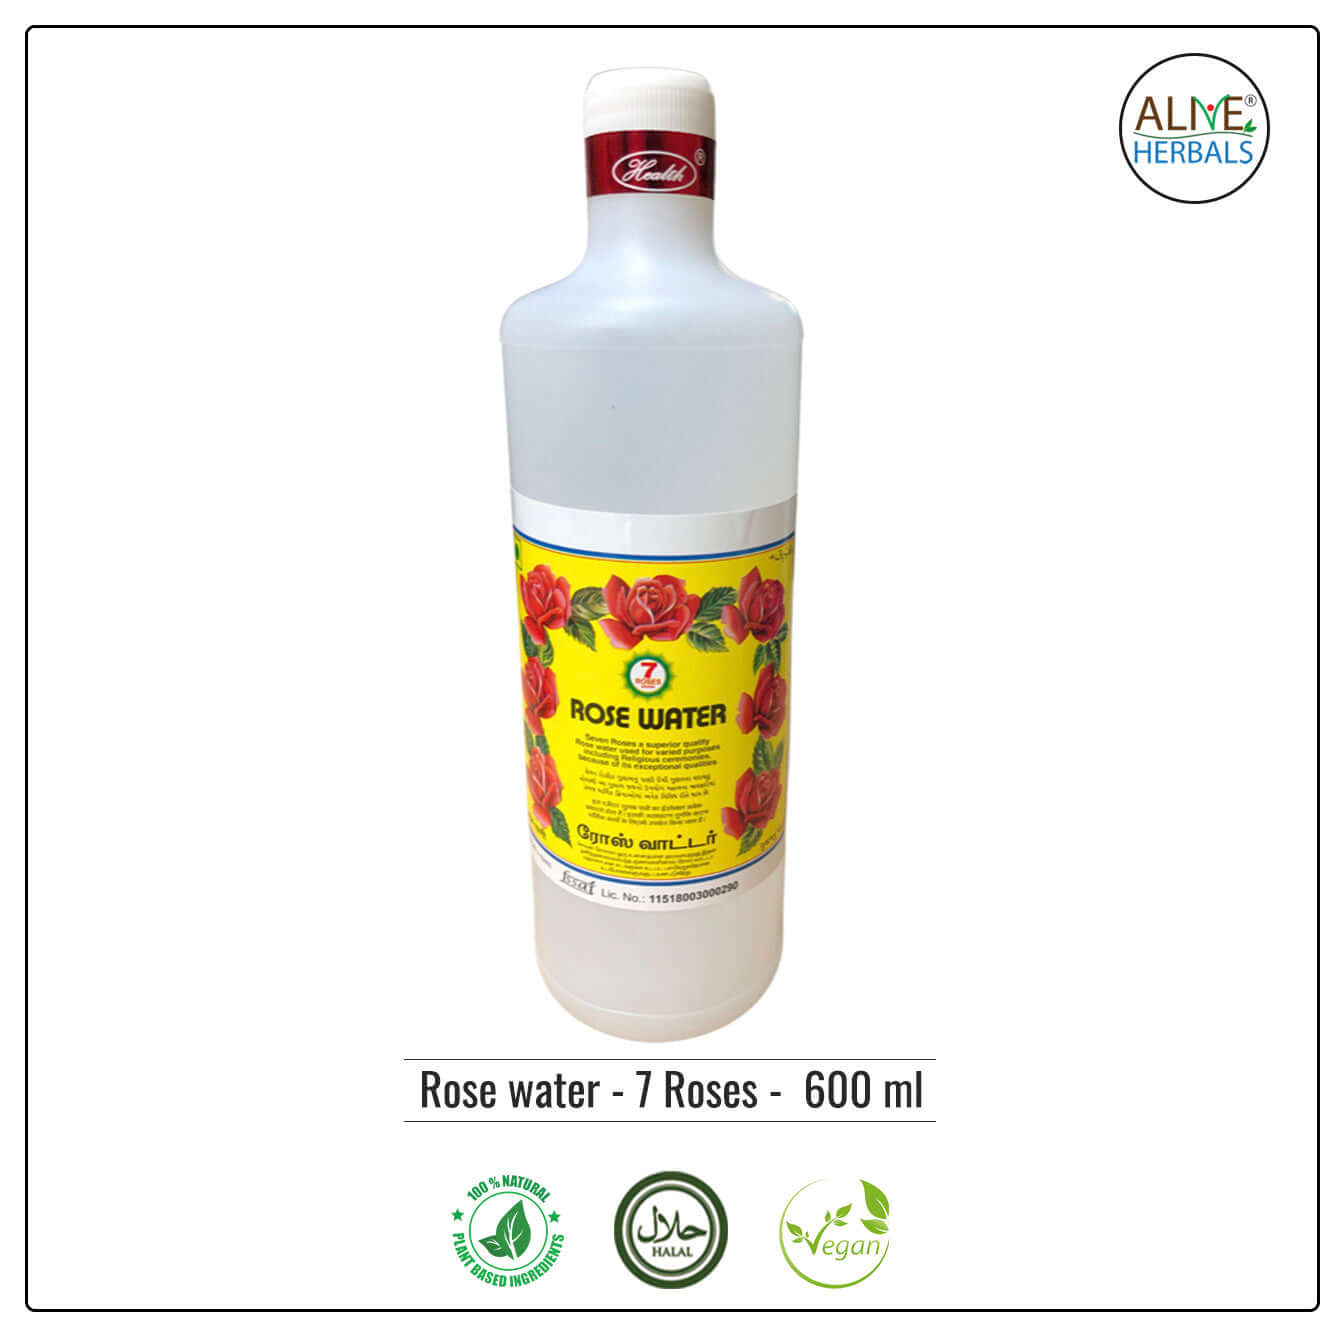 Rose Water - 7 Roses - Buy at Natural Food Store | Alive Herbals.